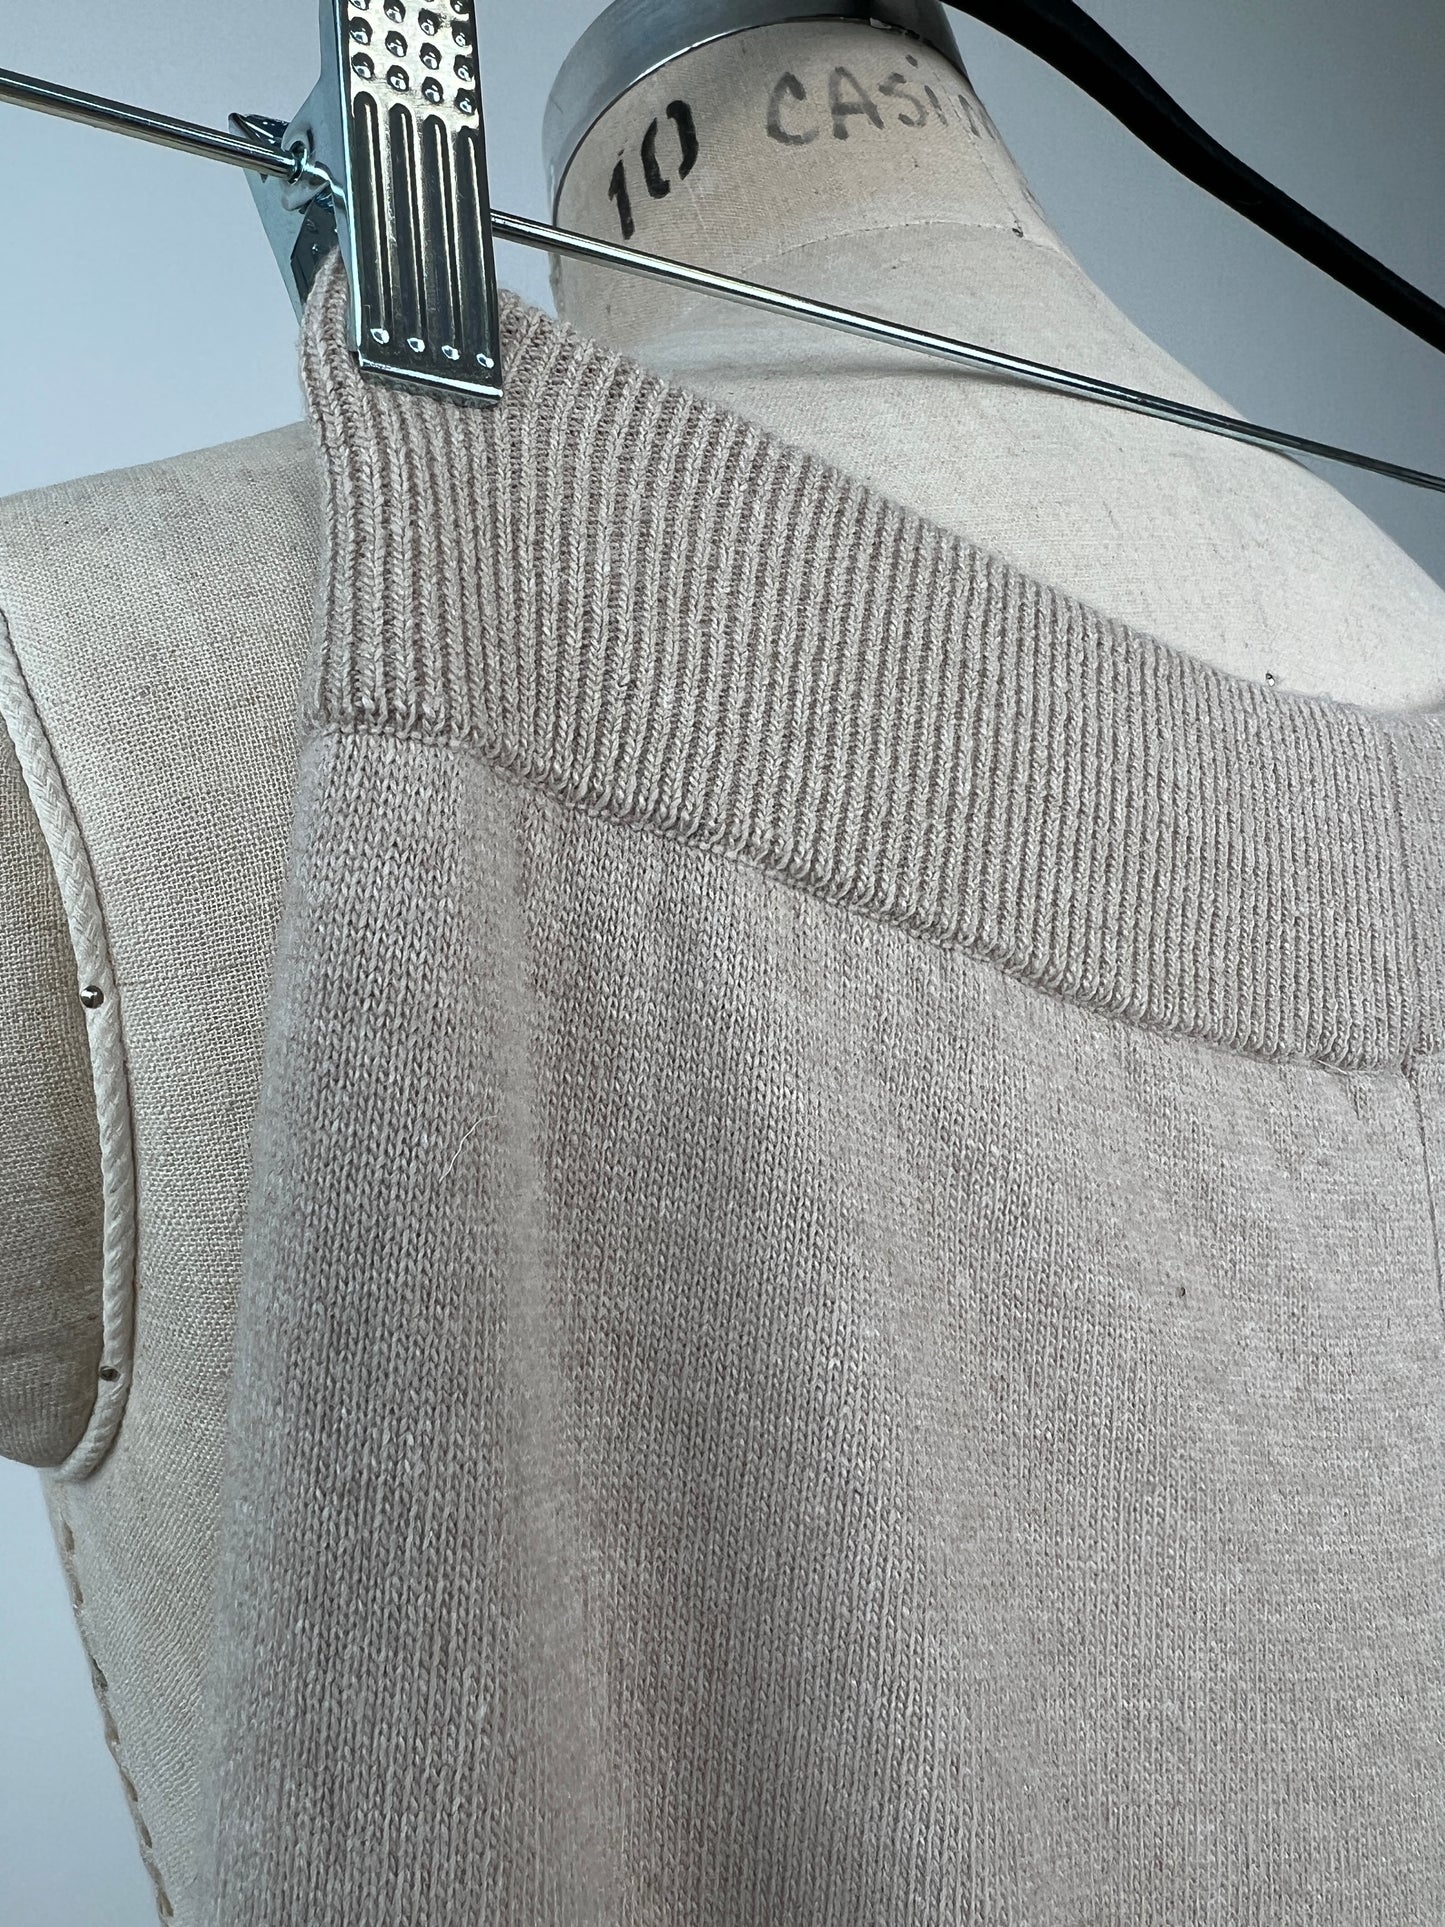 Pantalon évasé en tricot argile à rayures amande / blanc (S)